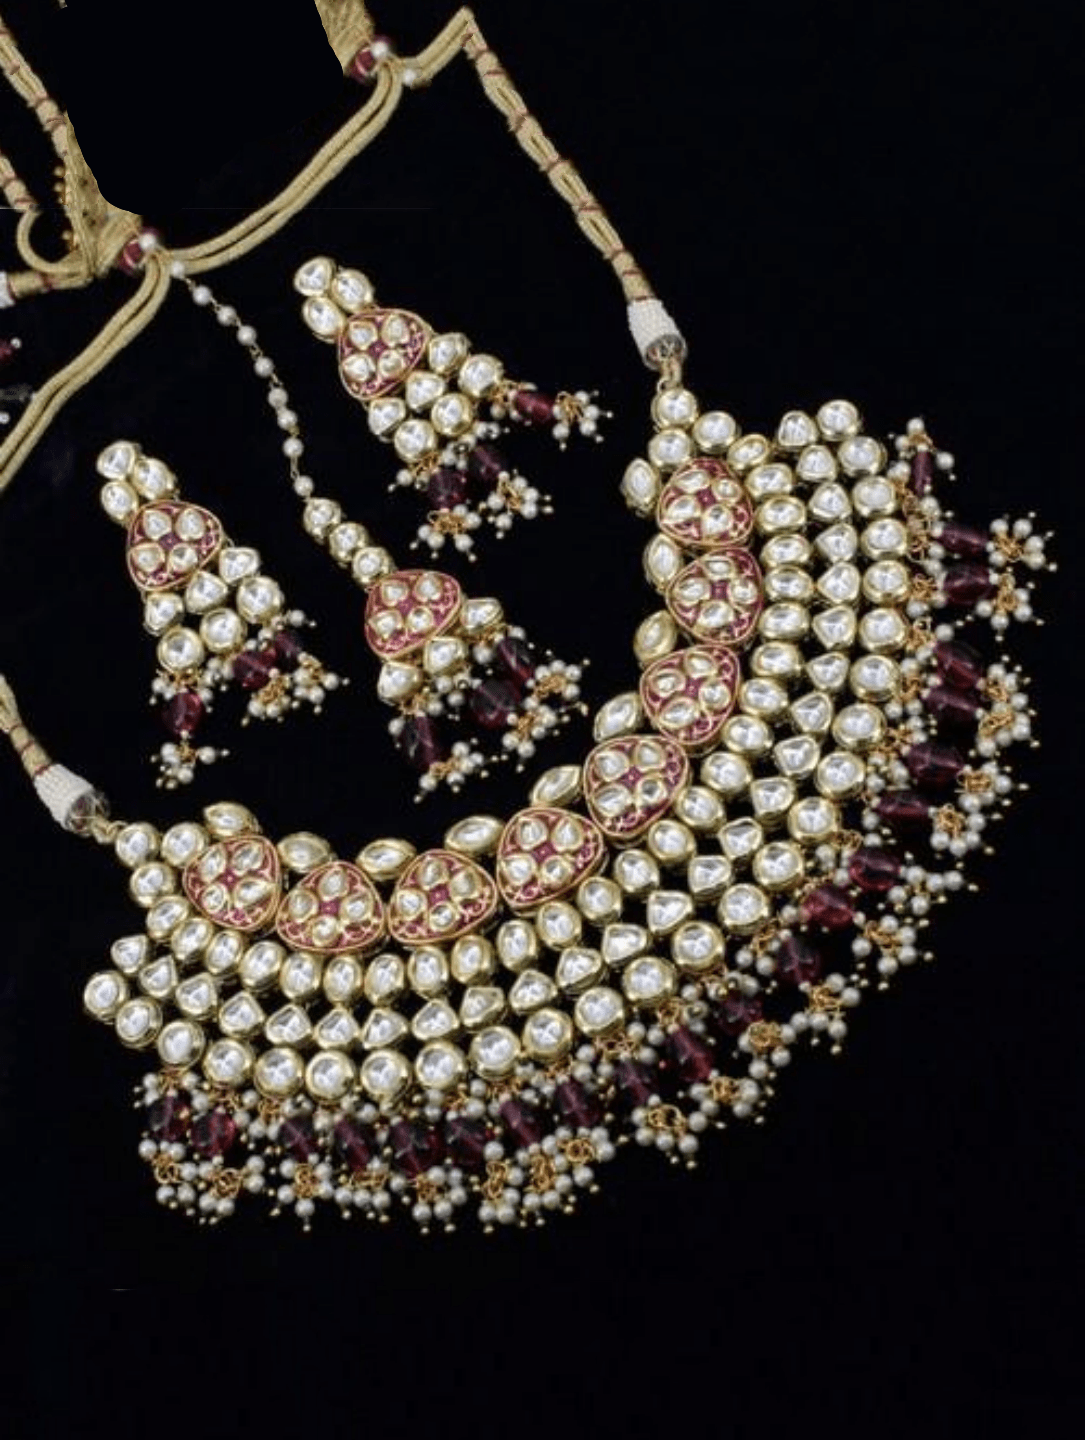 Ishhaara Maroon Meena Kundan Necklace Set With Teeka